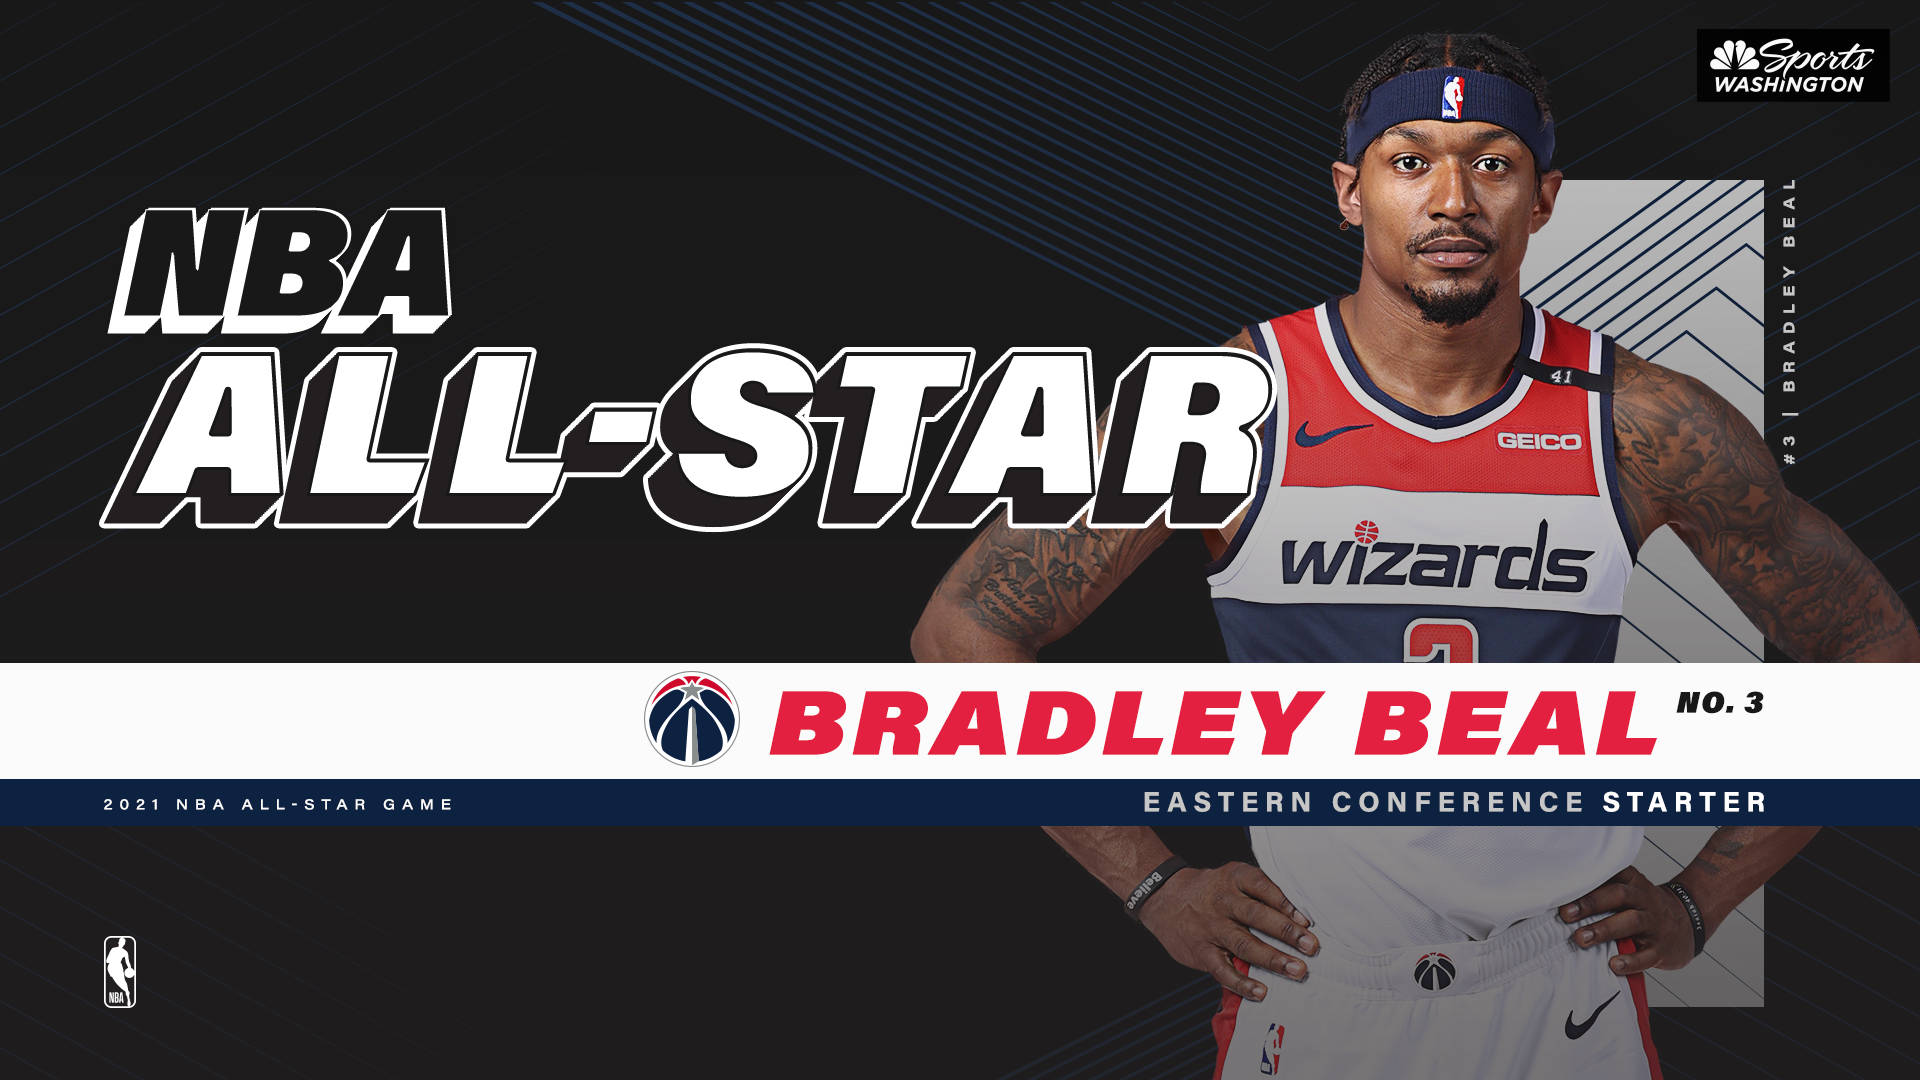 Bradleybeal, Jugador De Baloncesto De La Nba Y All-star. Fondo de pantalla